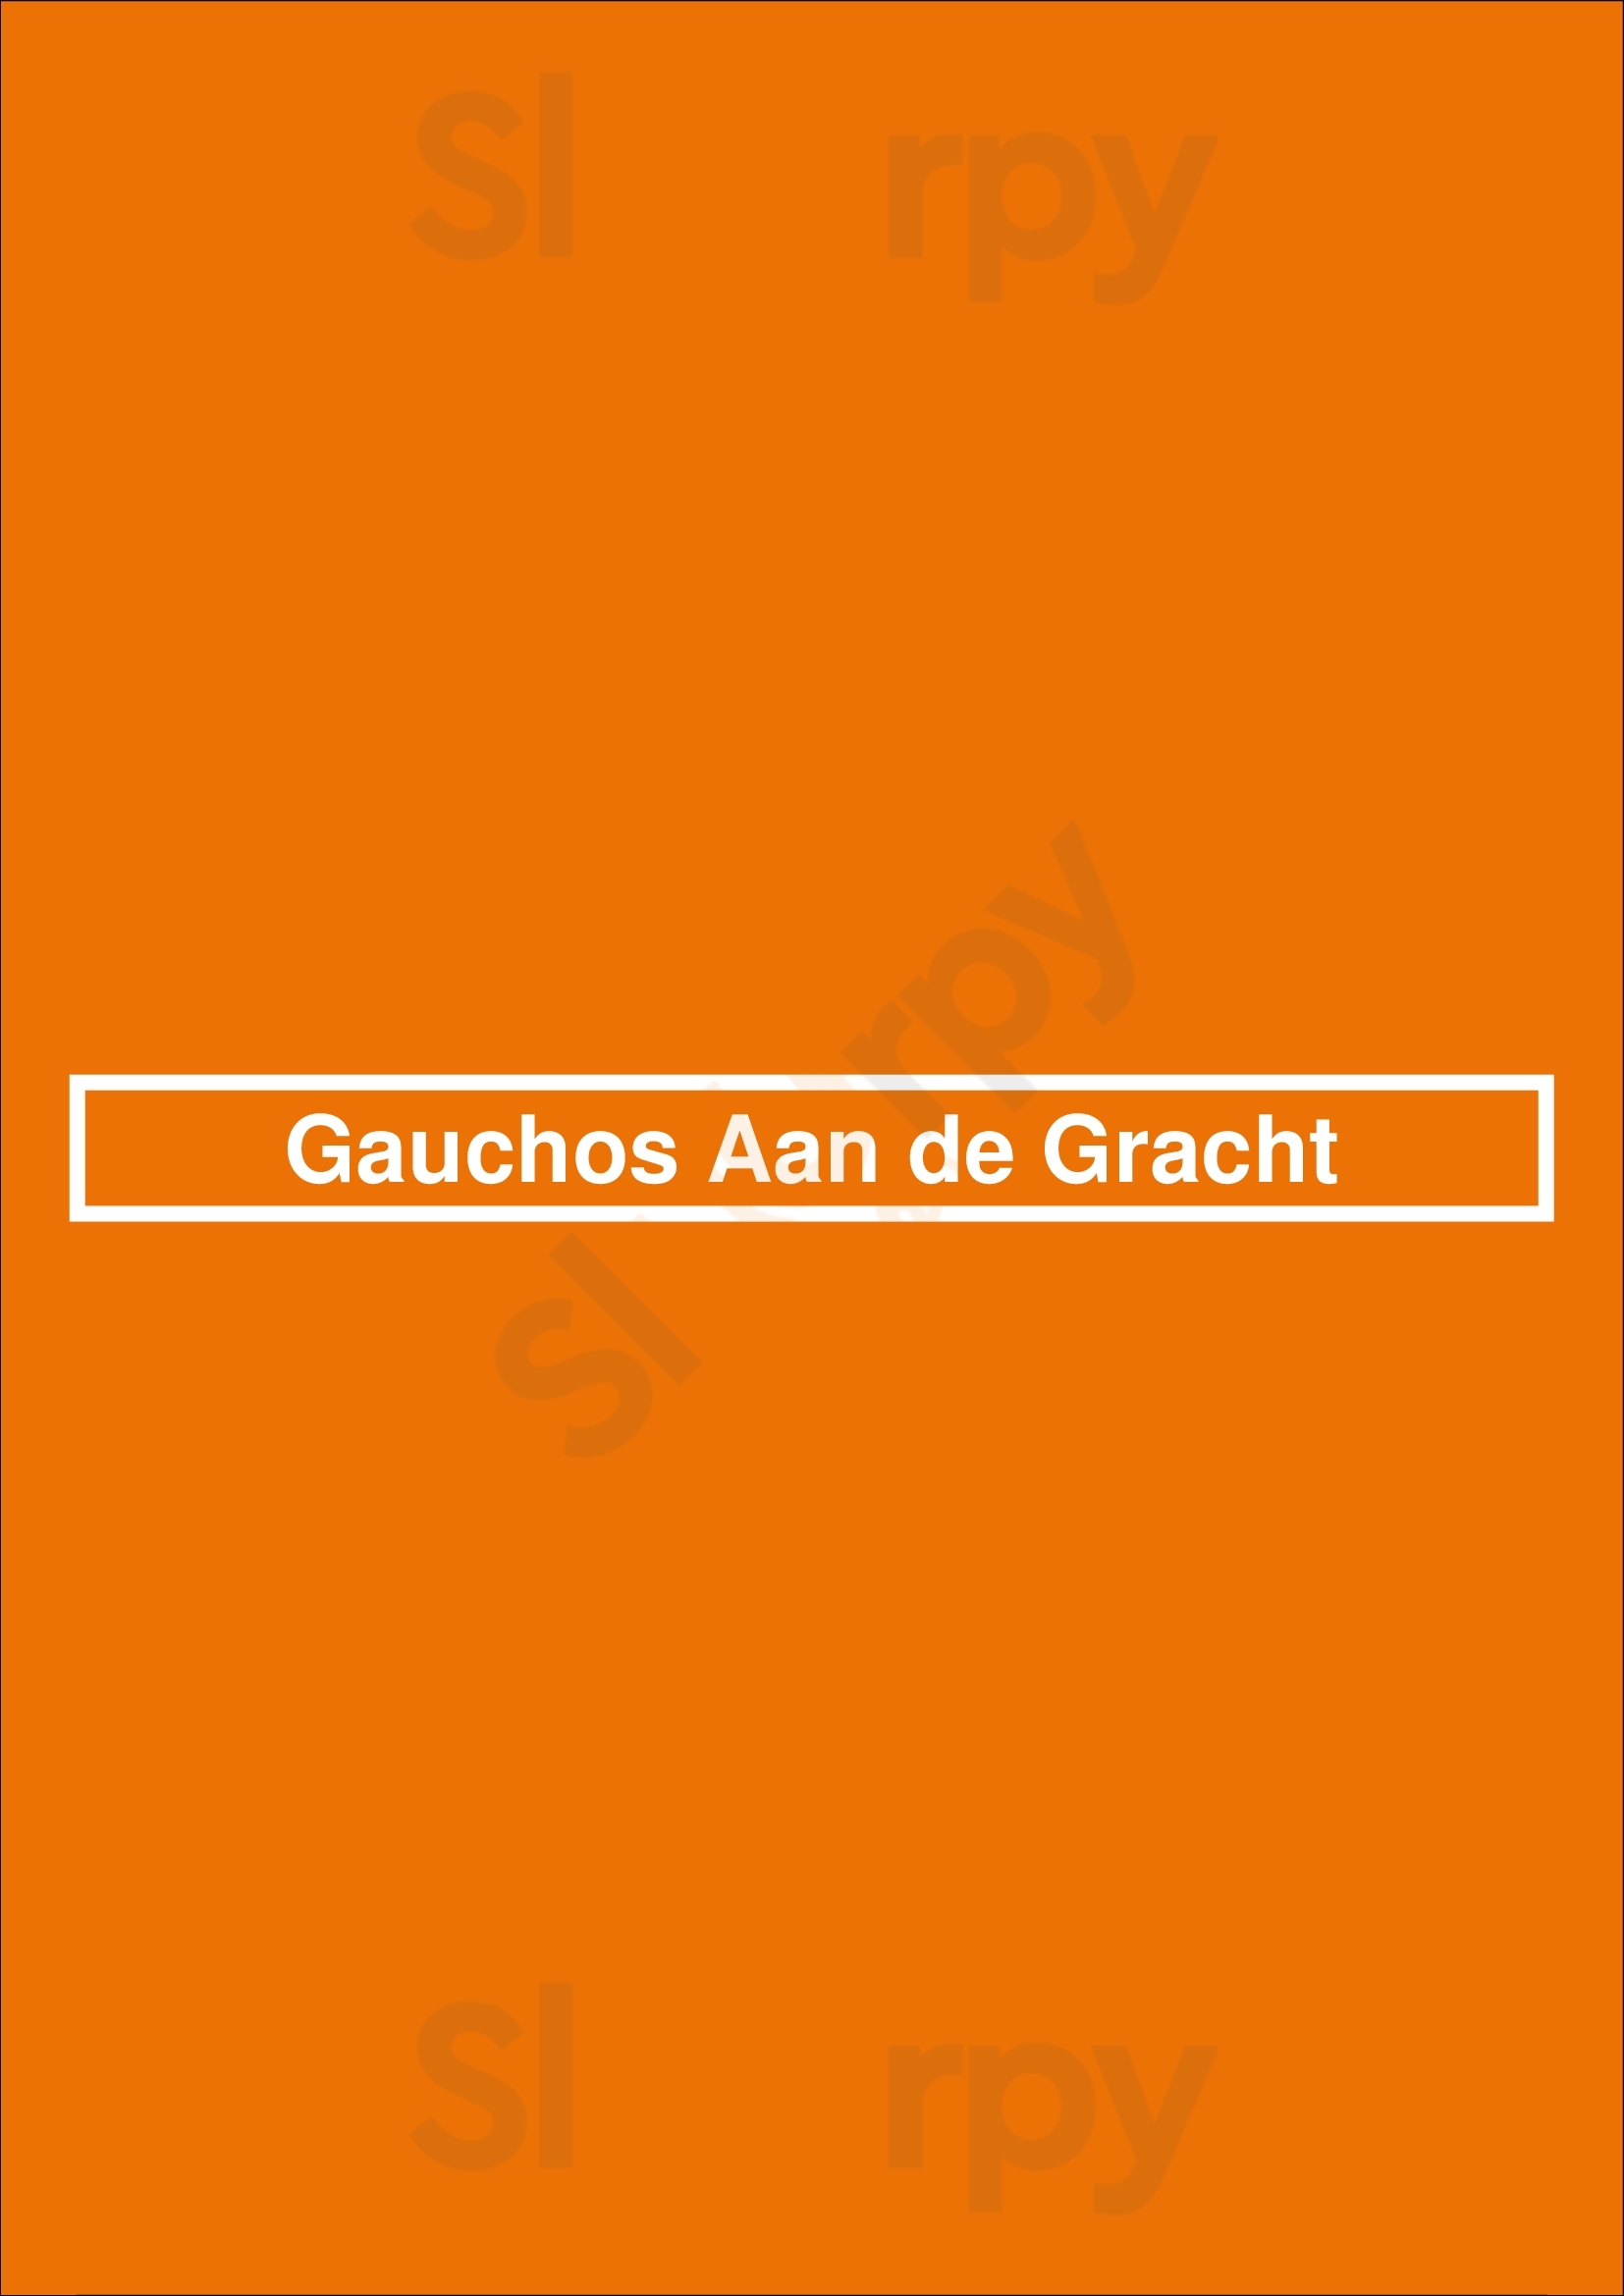 Gauchos Aan De Gracht Utrecht Menu - 1